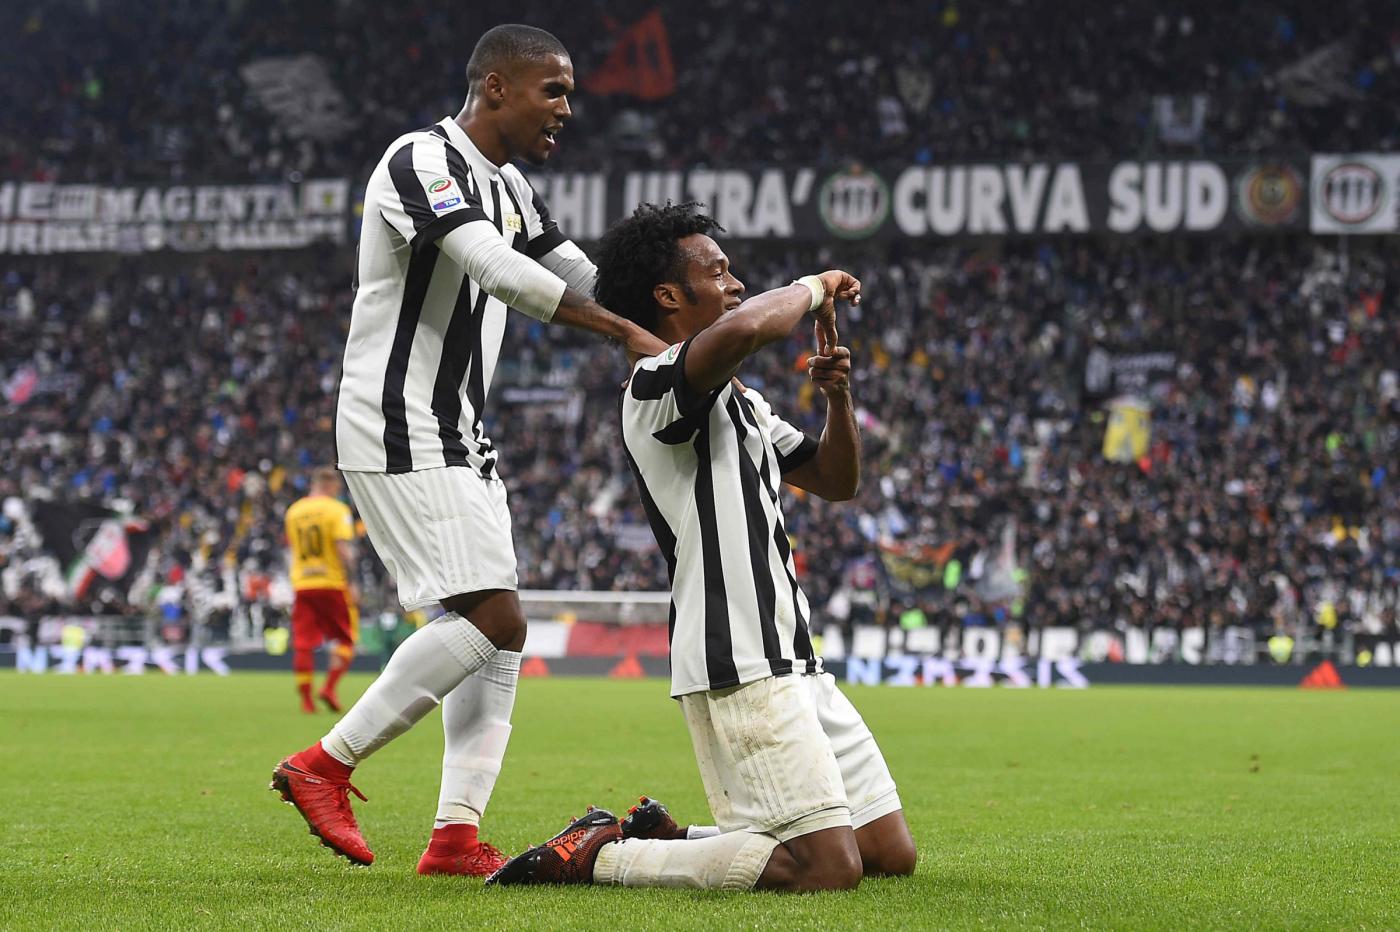 Juventus-Inter sabato 9 dicembre, analisi, probabili formazioni e pronostico serie A giornata 16, derby d'Italia